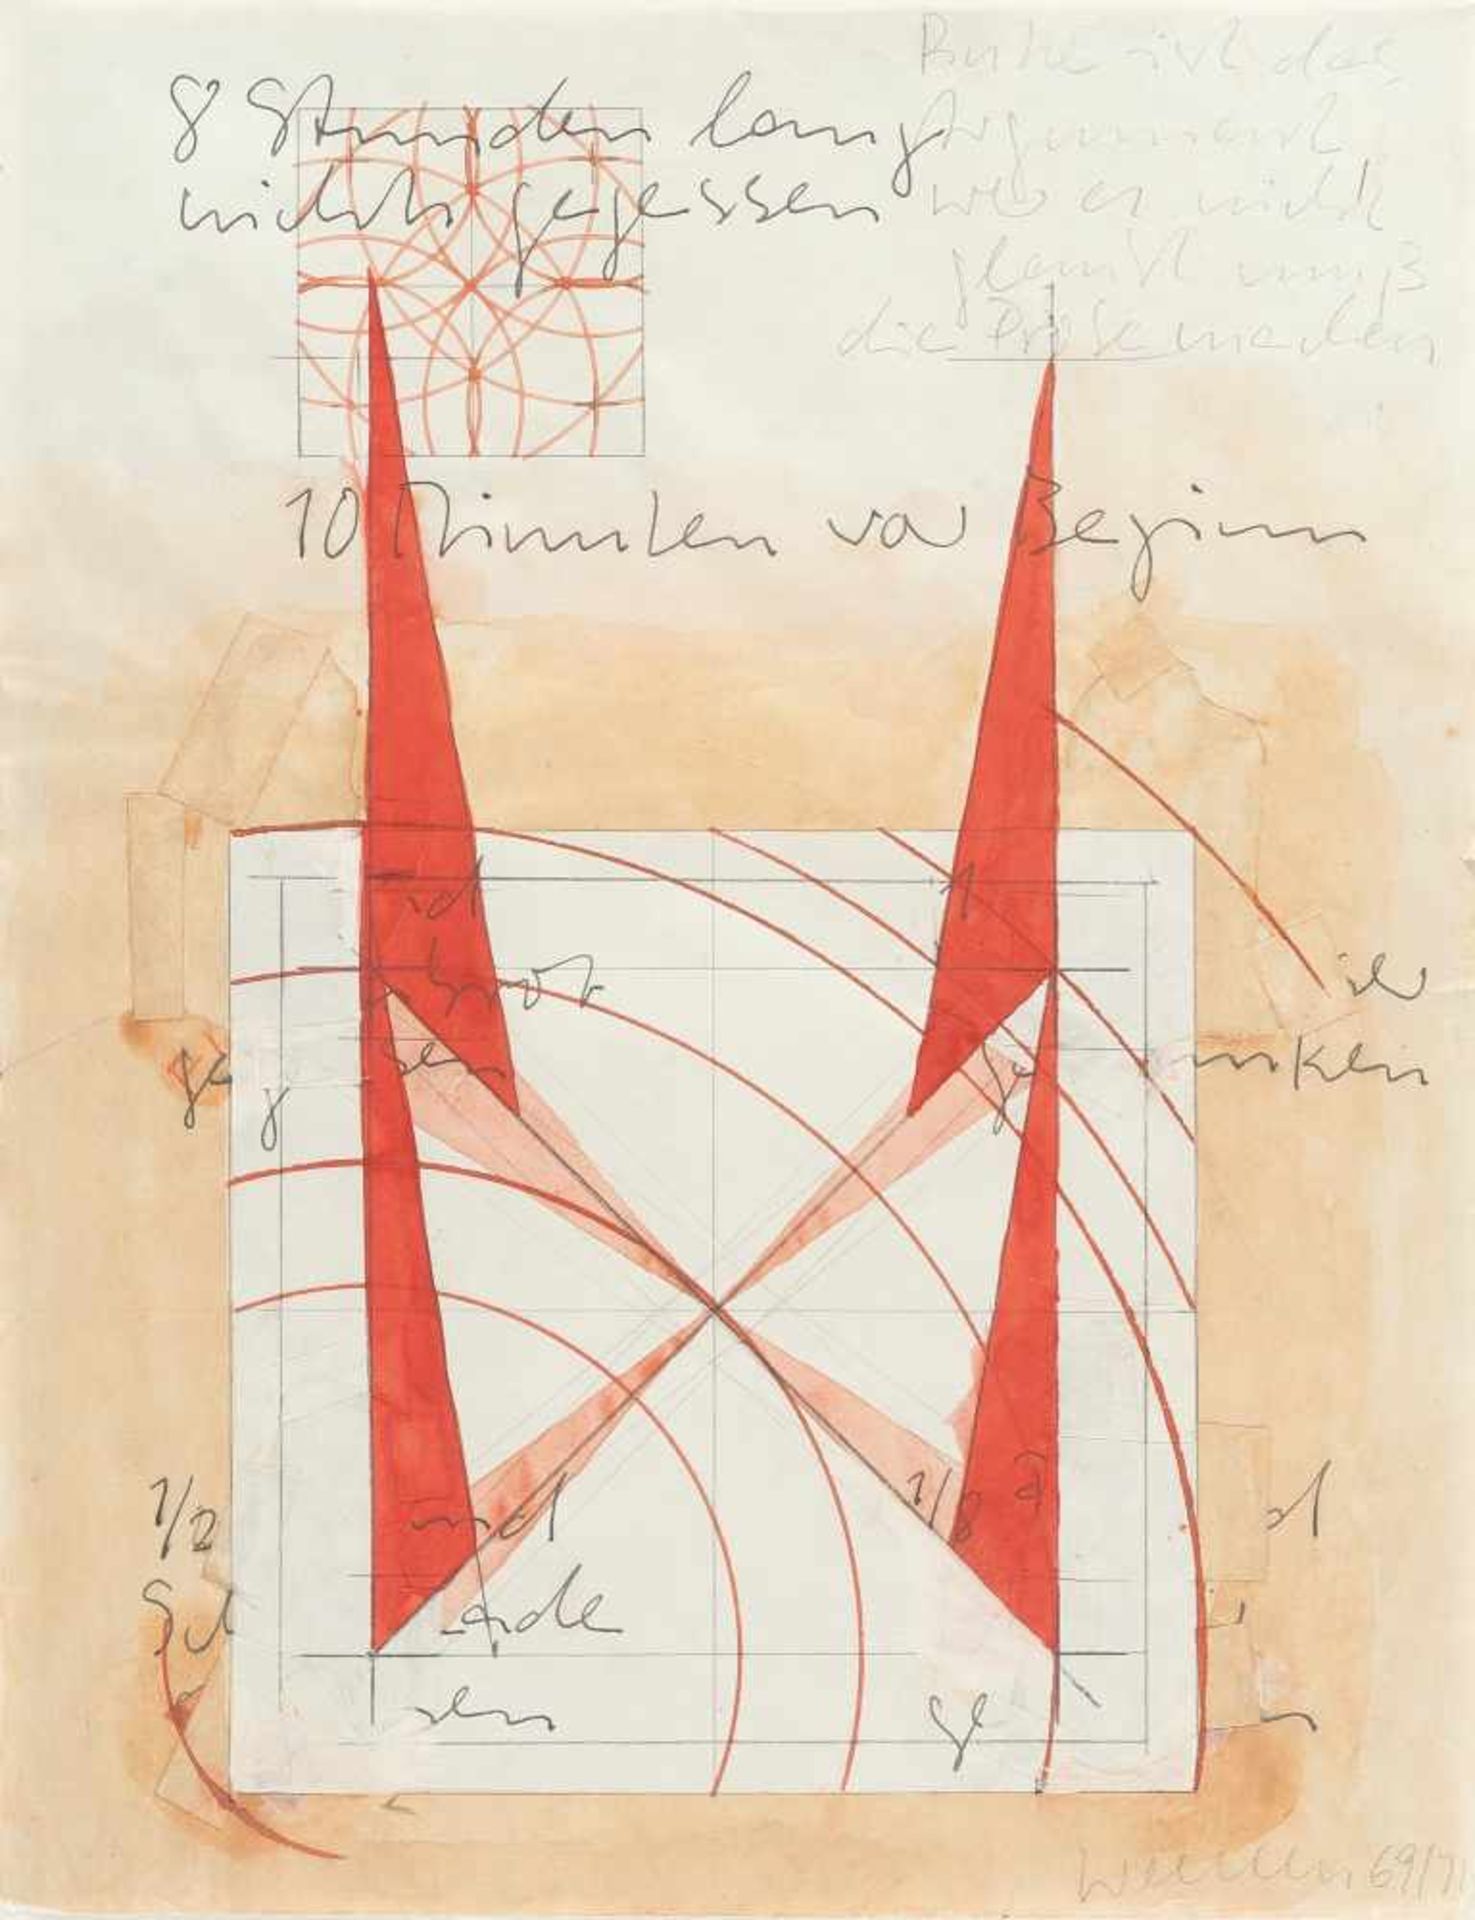 FRANZ ERHARD WALTHER - Recto - Verso: Werkzeichnung Mischtechnik und Collage auf dünnem